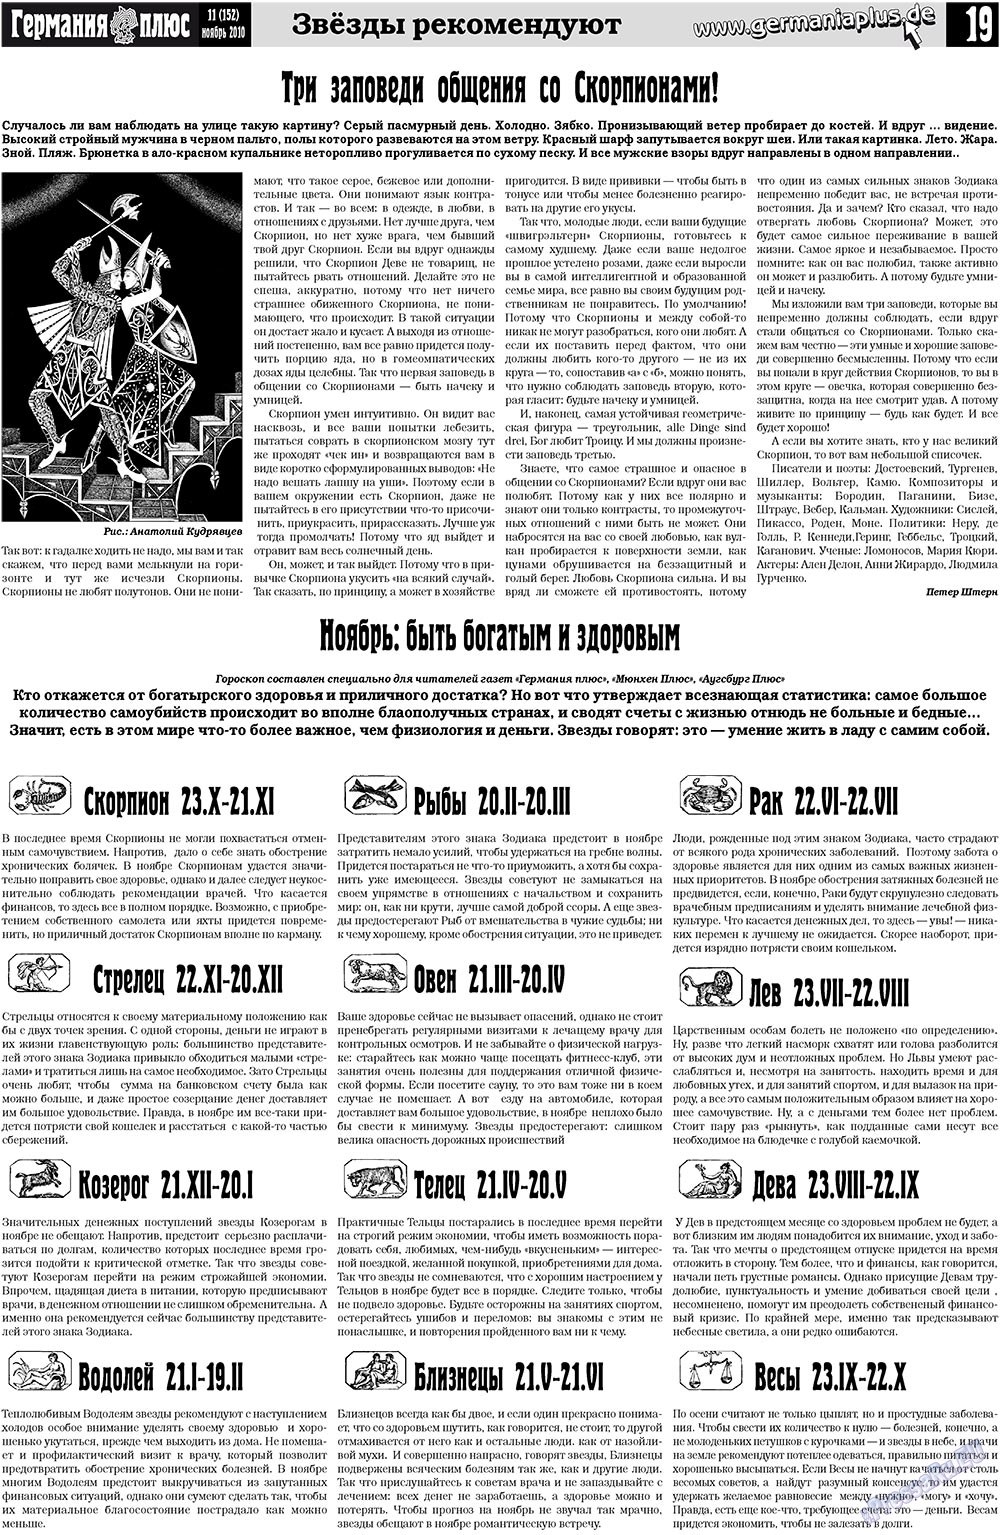 Германия плюс (газета). 2010 год, номер 11, стр. 19